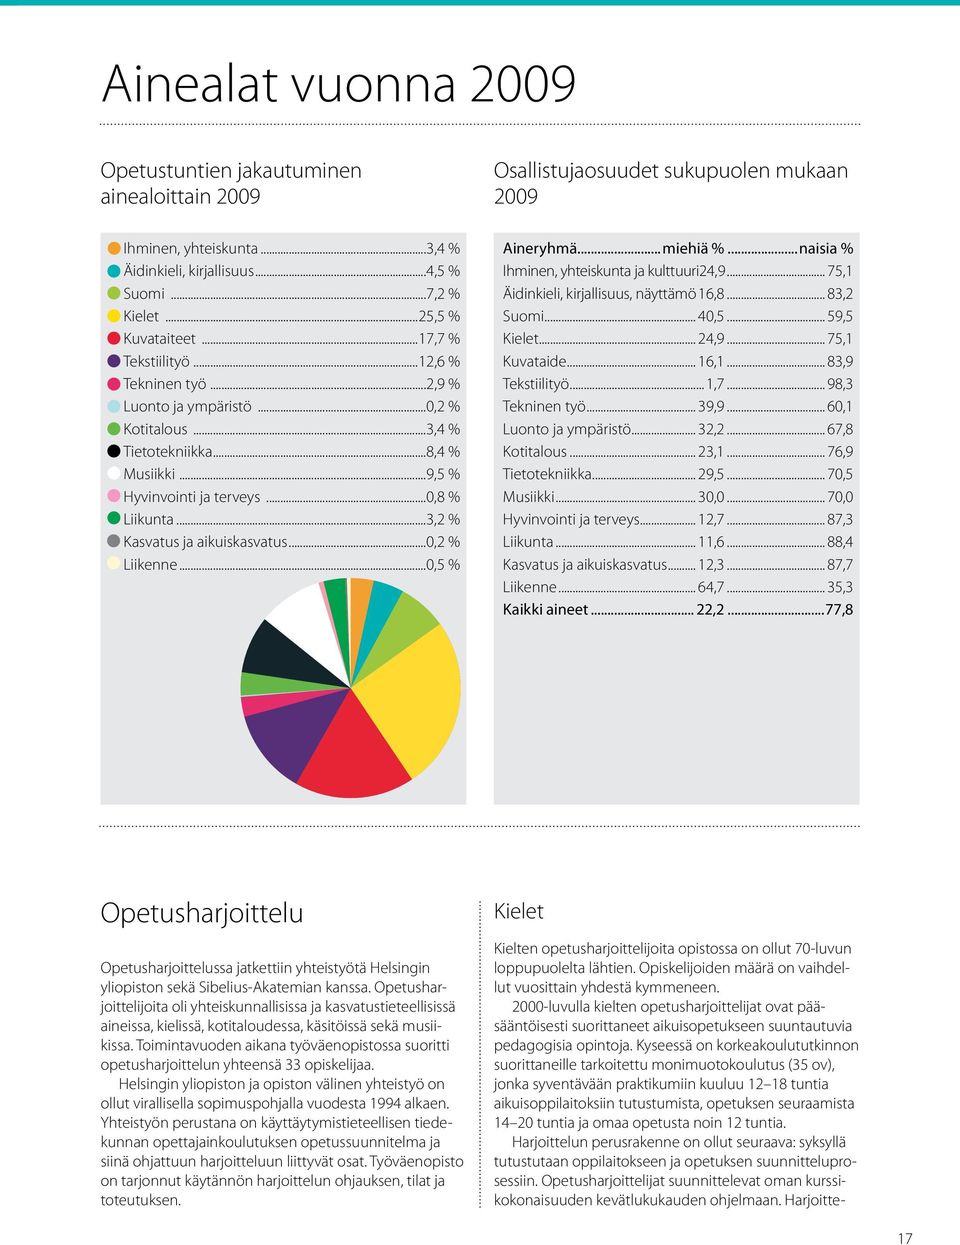 ..3,2 % Kasvatus ja aikuiskasvatus...0,2 % Liikenne...0,5 % Aineryhmä... miehiä %...naisia % Ihminen, yhteiskunta ja kulttuuri.24,9... 75,1 Äidinkieli, kirjallisuus, näyttämö.16,8... 83,2 Suomi... 40,5.